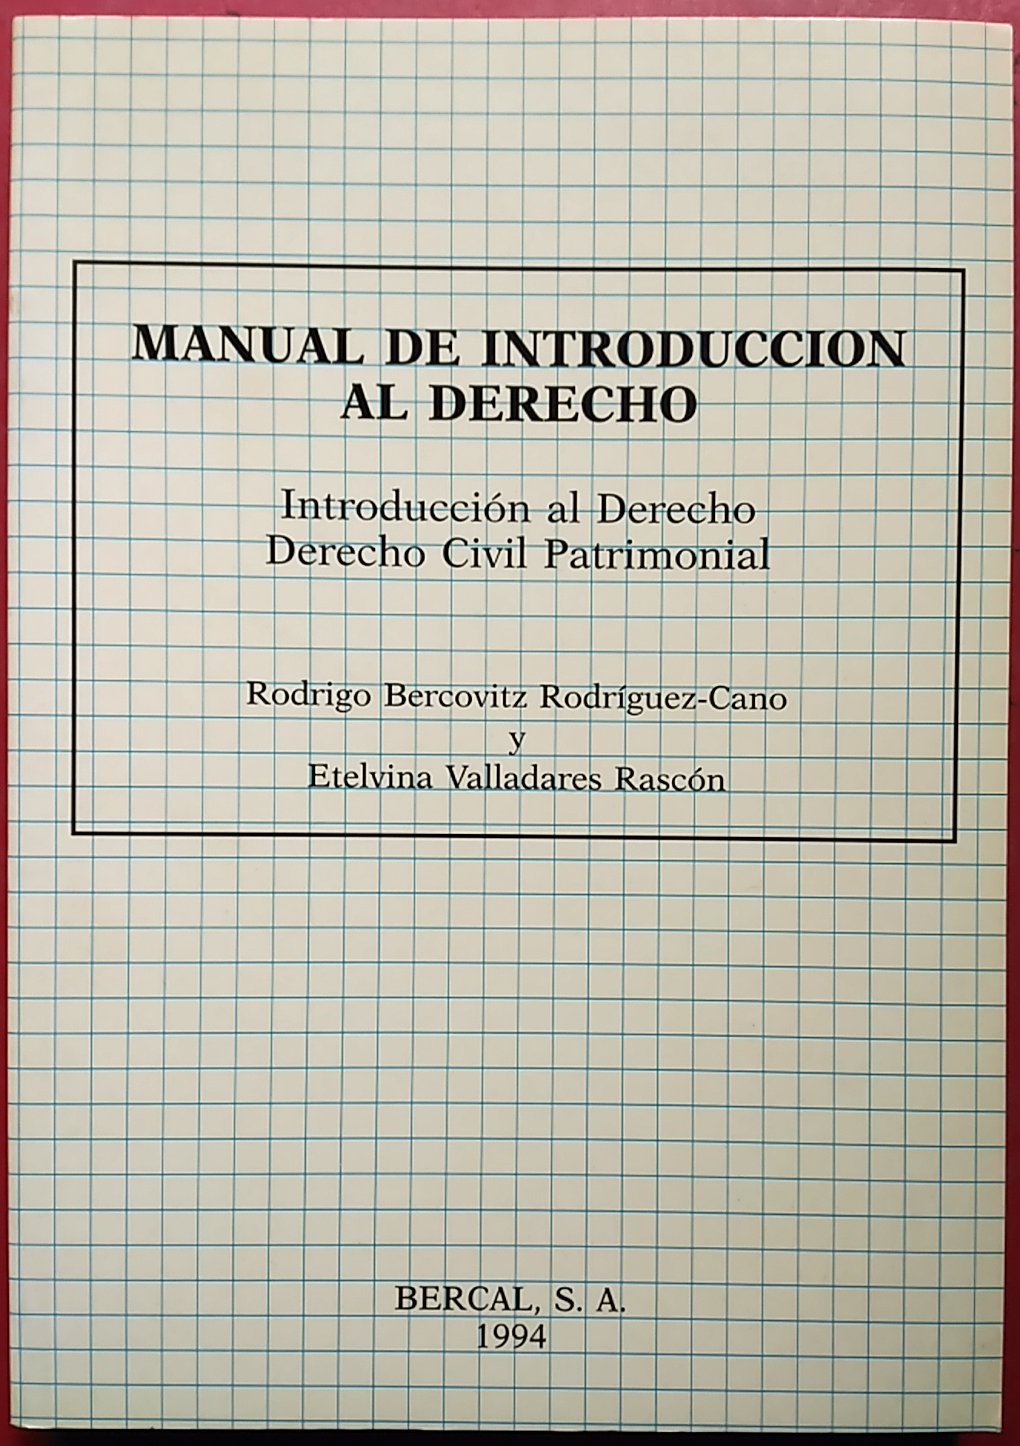 Imagen de portada del libro Manual de introducción al derecho